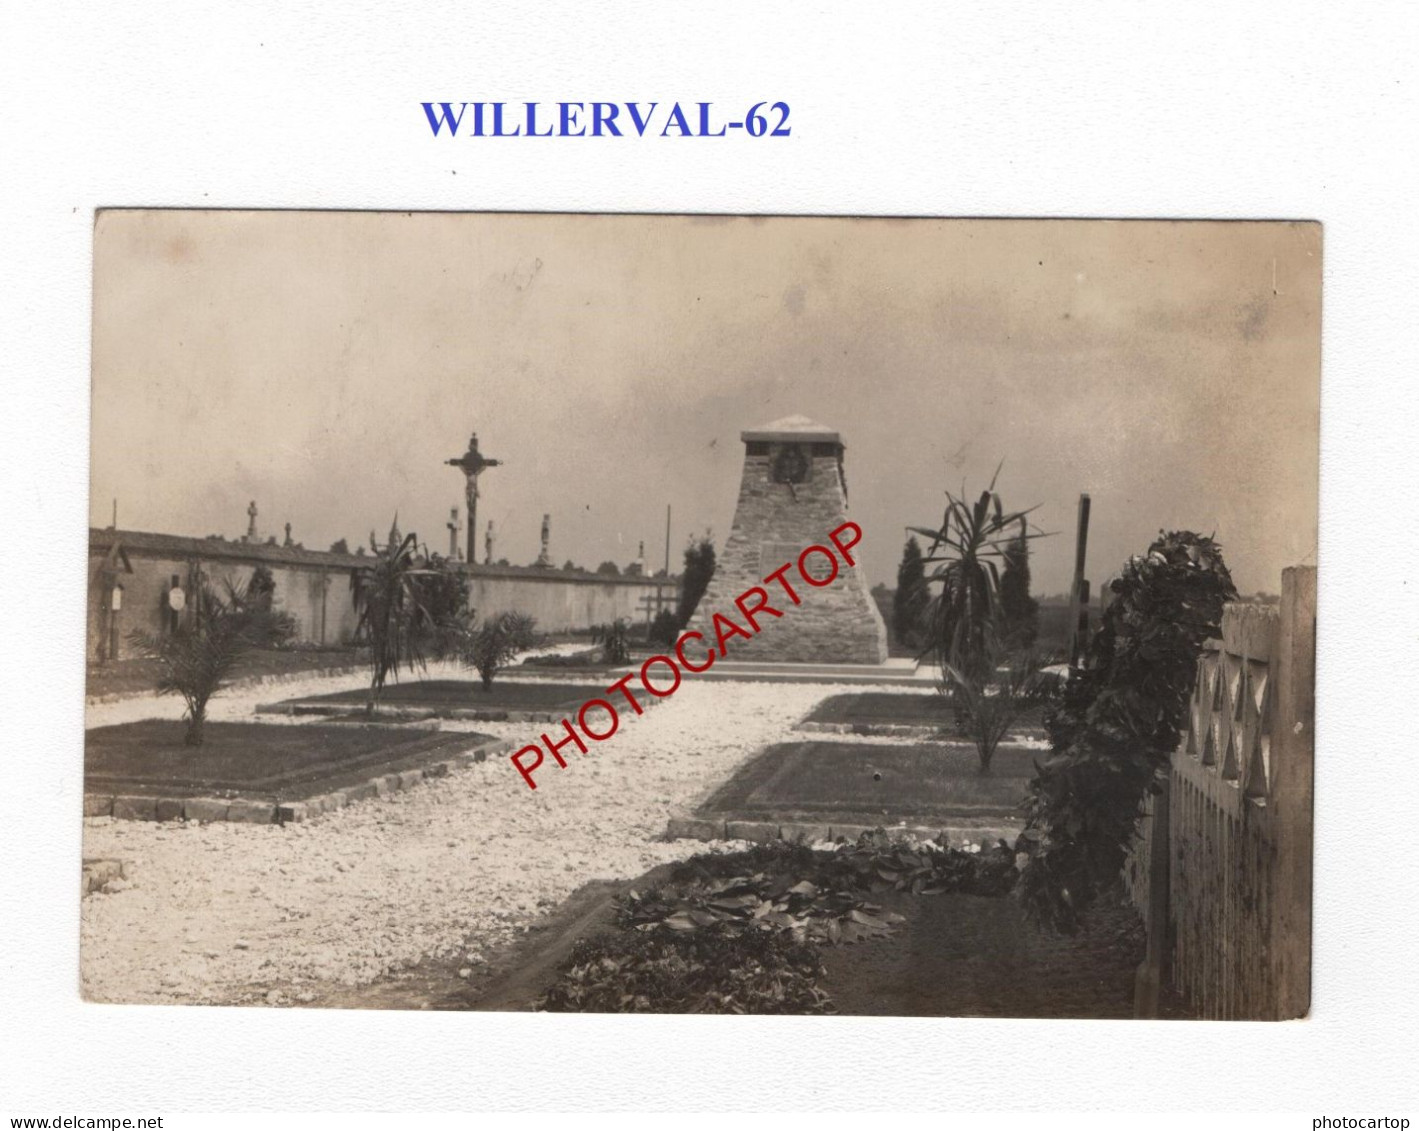 WILLERVAL-62-Monument-Cimetiere-Tombes-CARTE PHOTO Allemande-GUERRE 14-18-1 WK-MILITARIA- - Oorlogsbegraafplaatsen